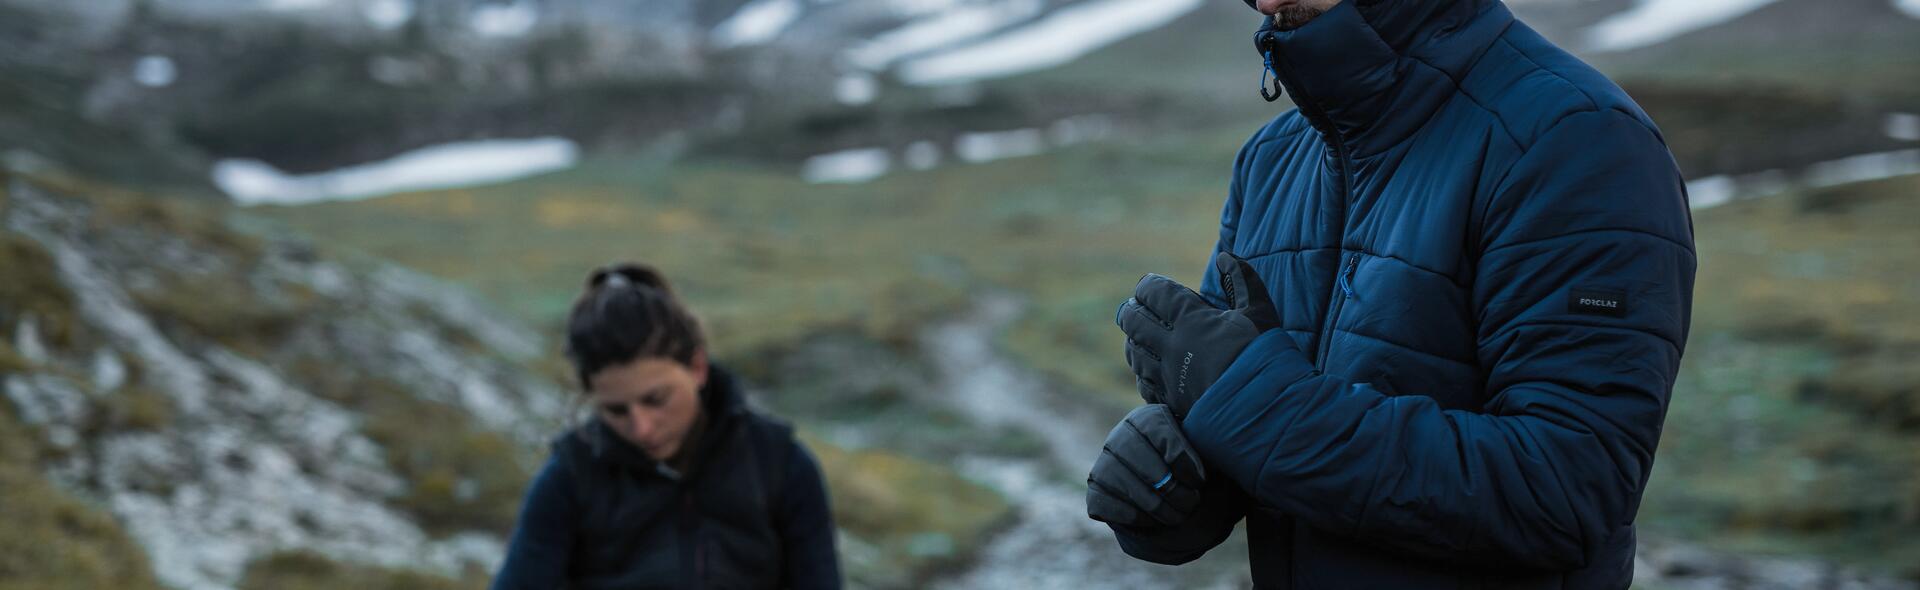 kobieta i mężczyzna w rękawiczkach i kurtce puchowej w górach